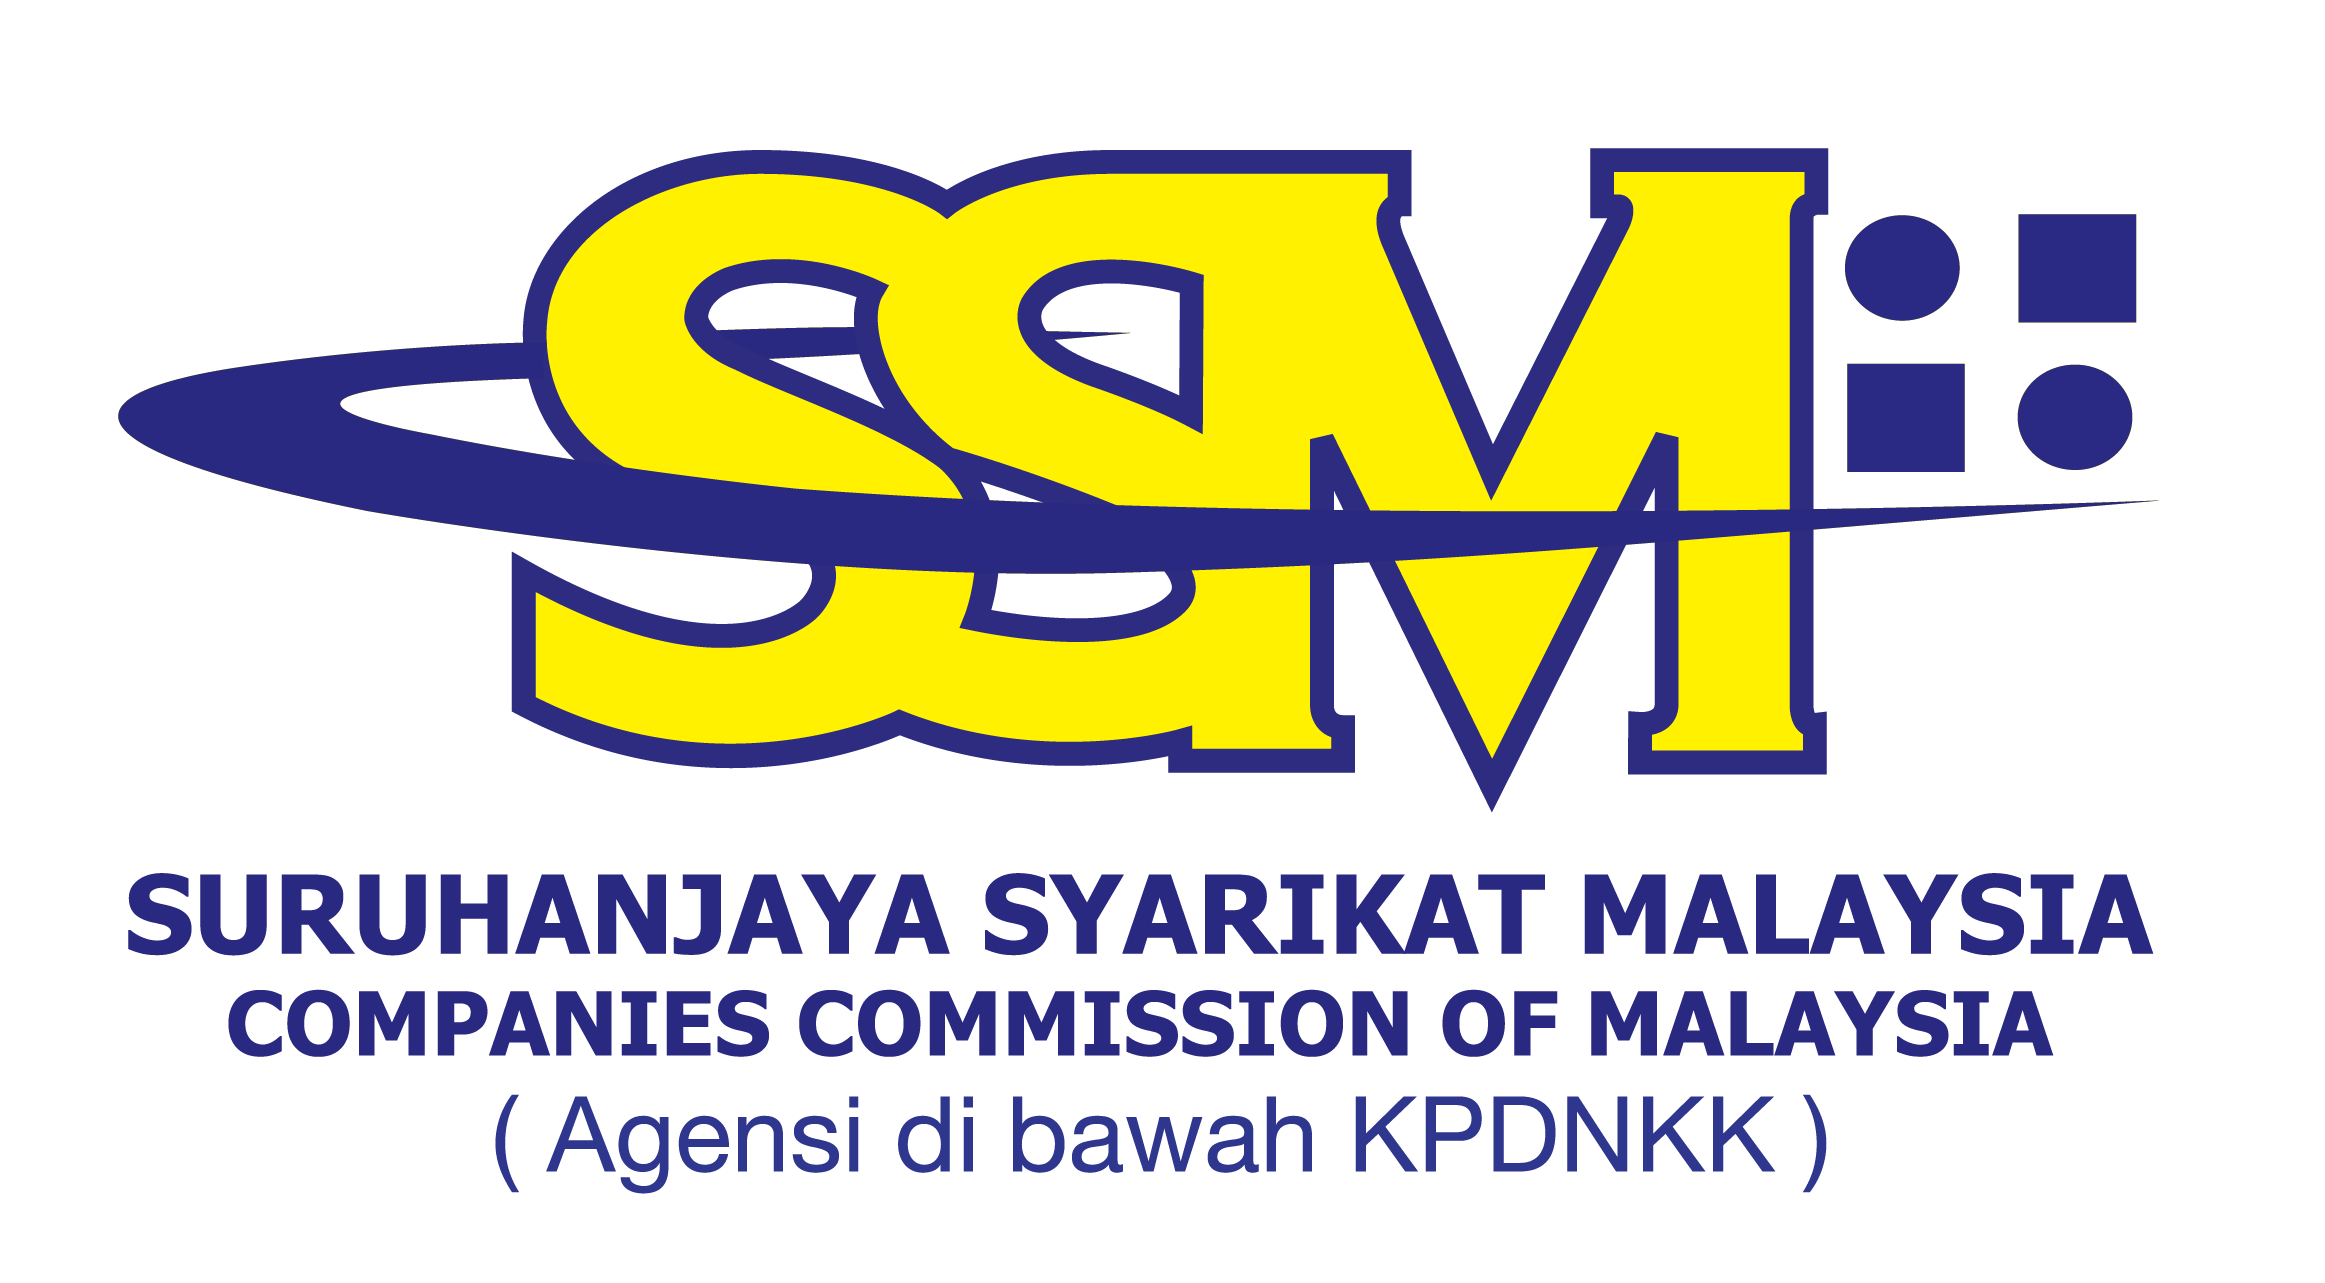 Ssm Logo Info Com My